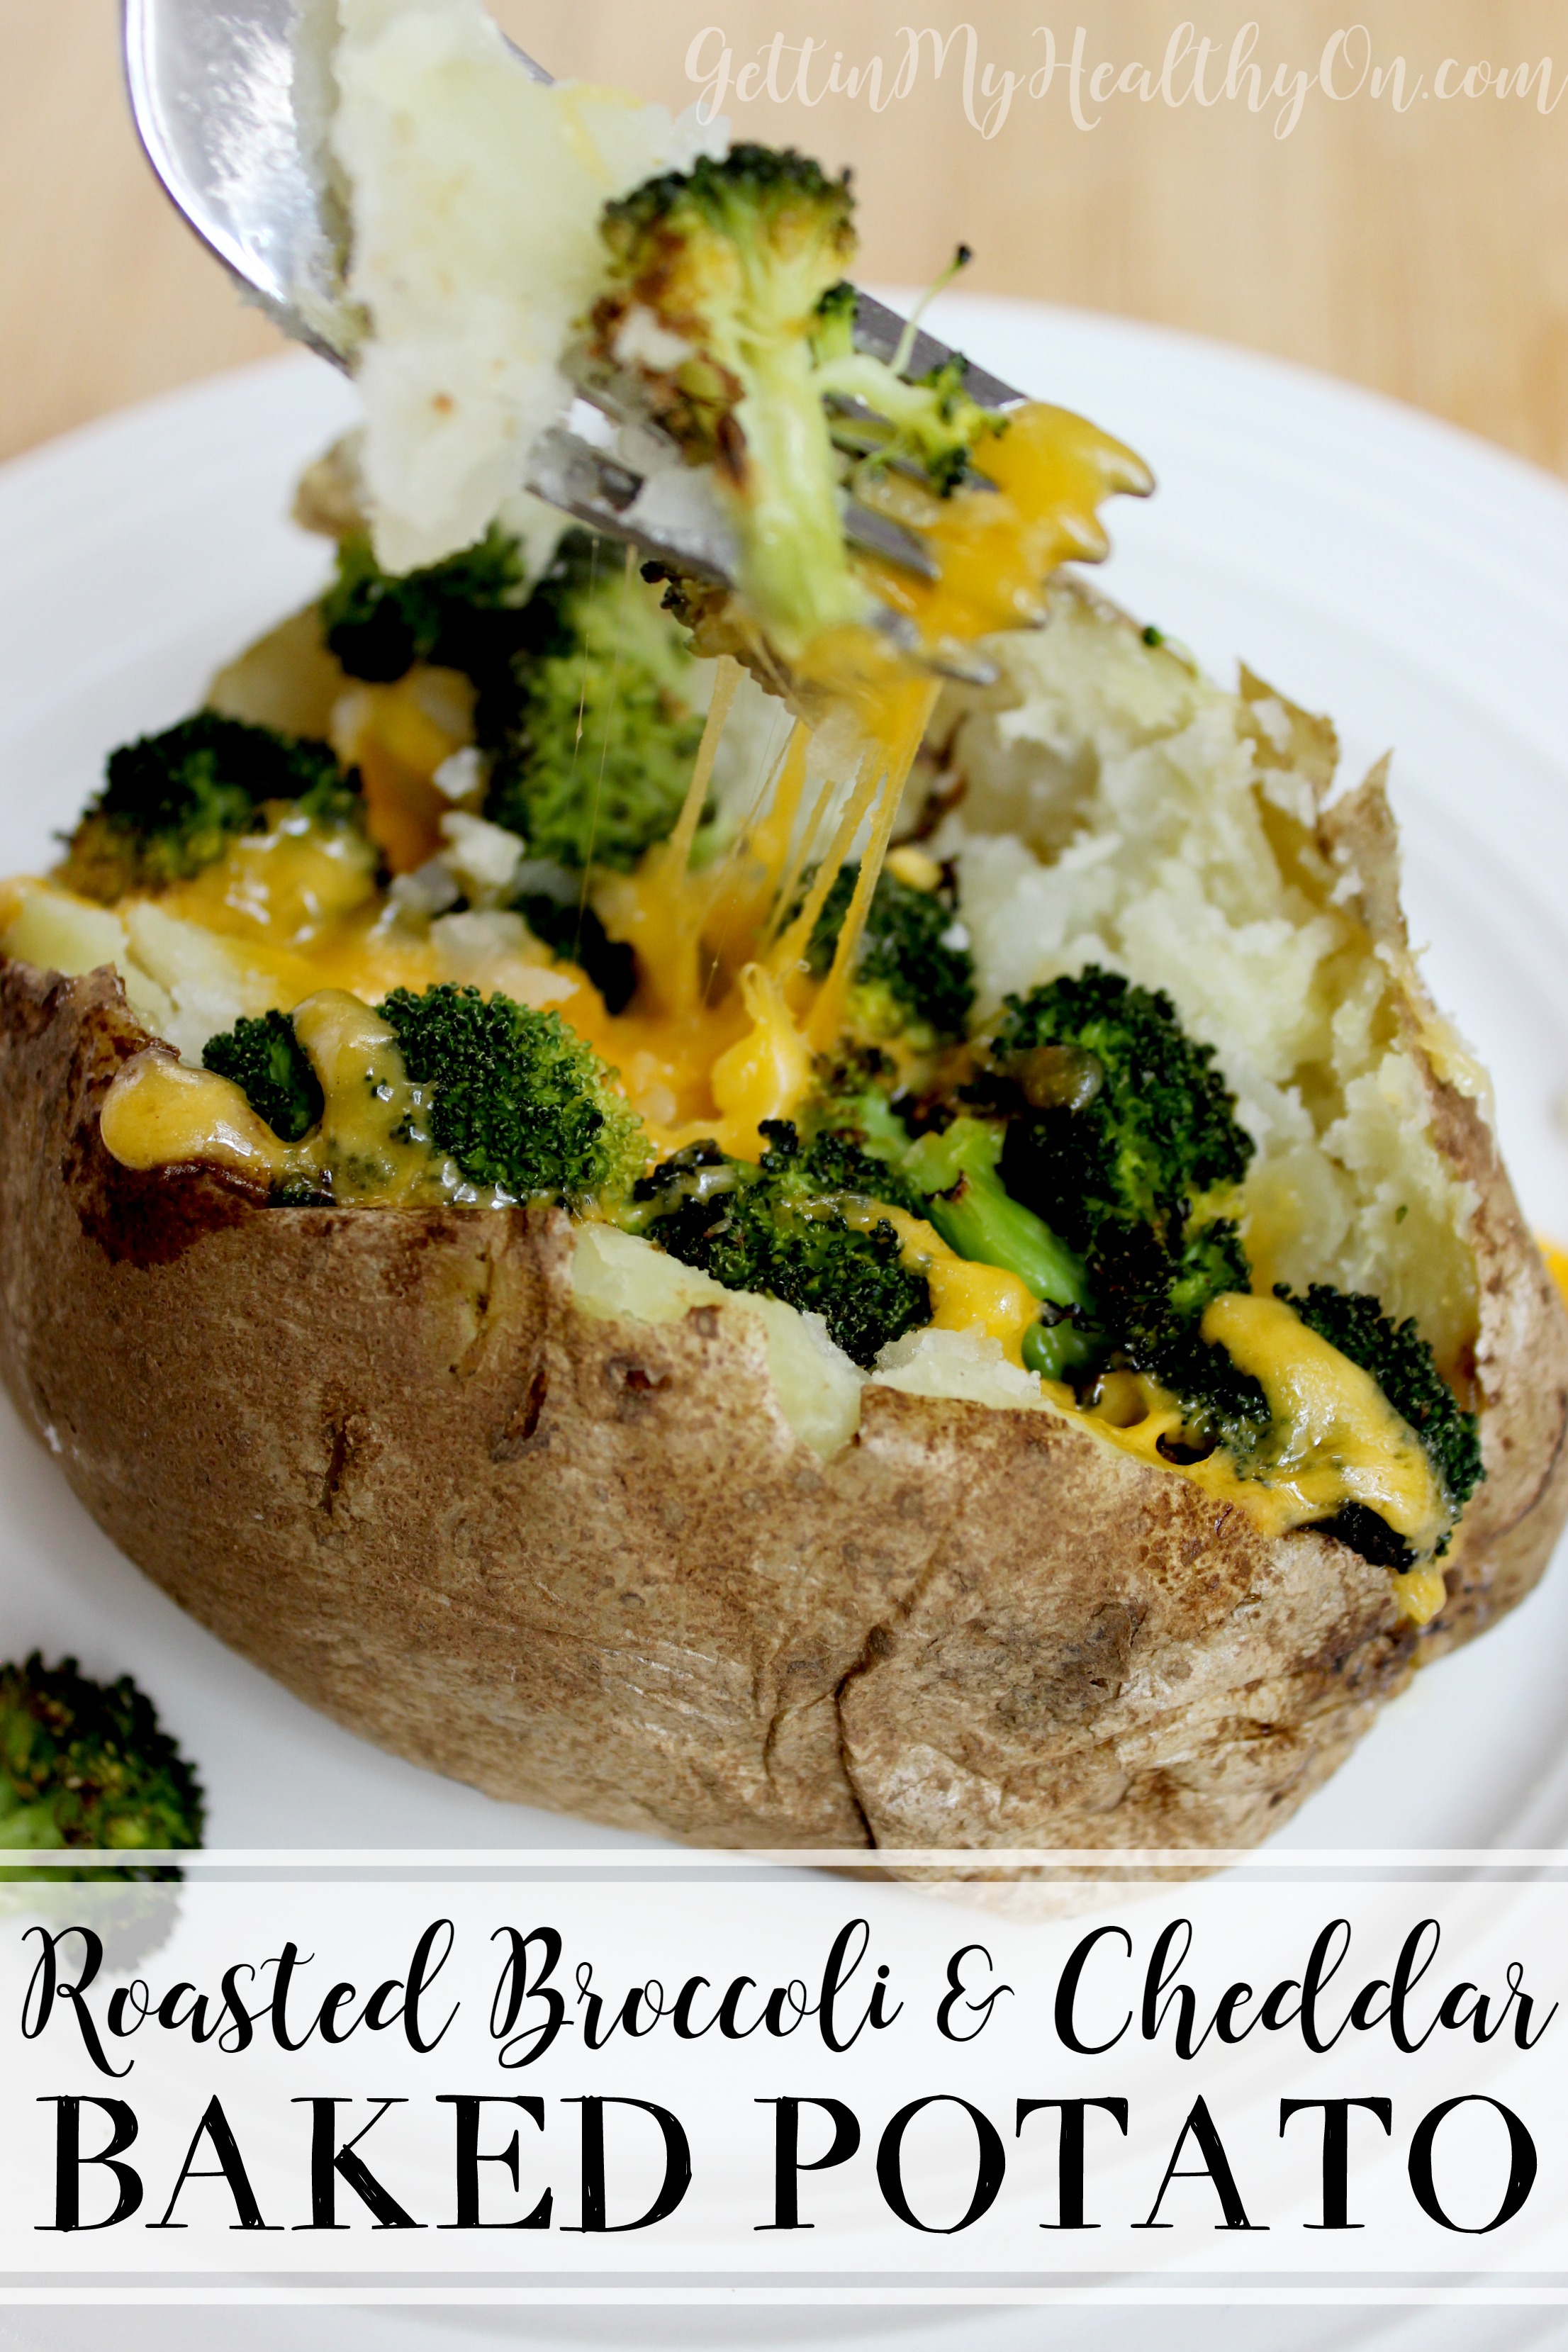 Roasted Broccoli & Cheddar Baked Potato